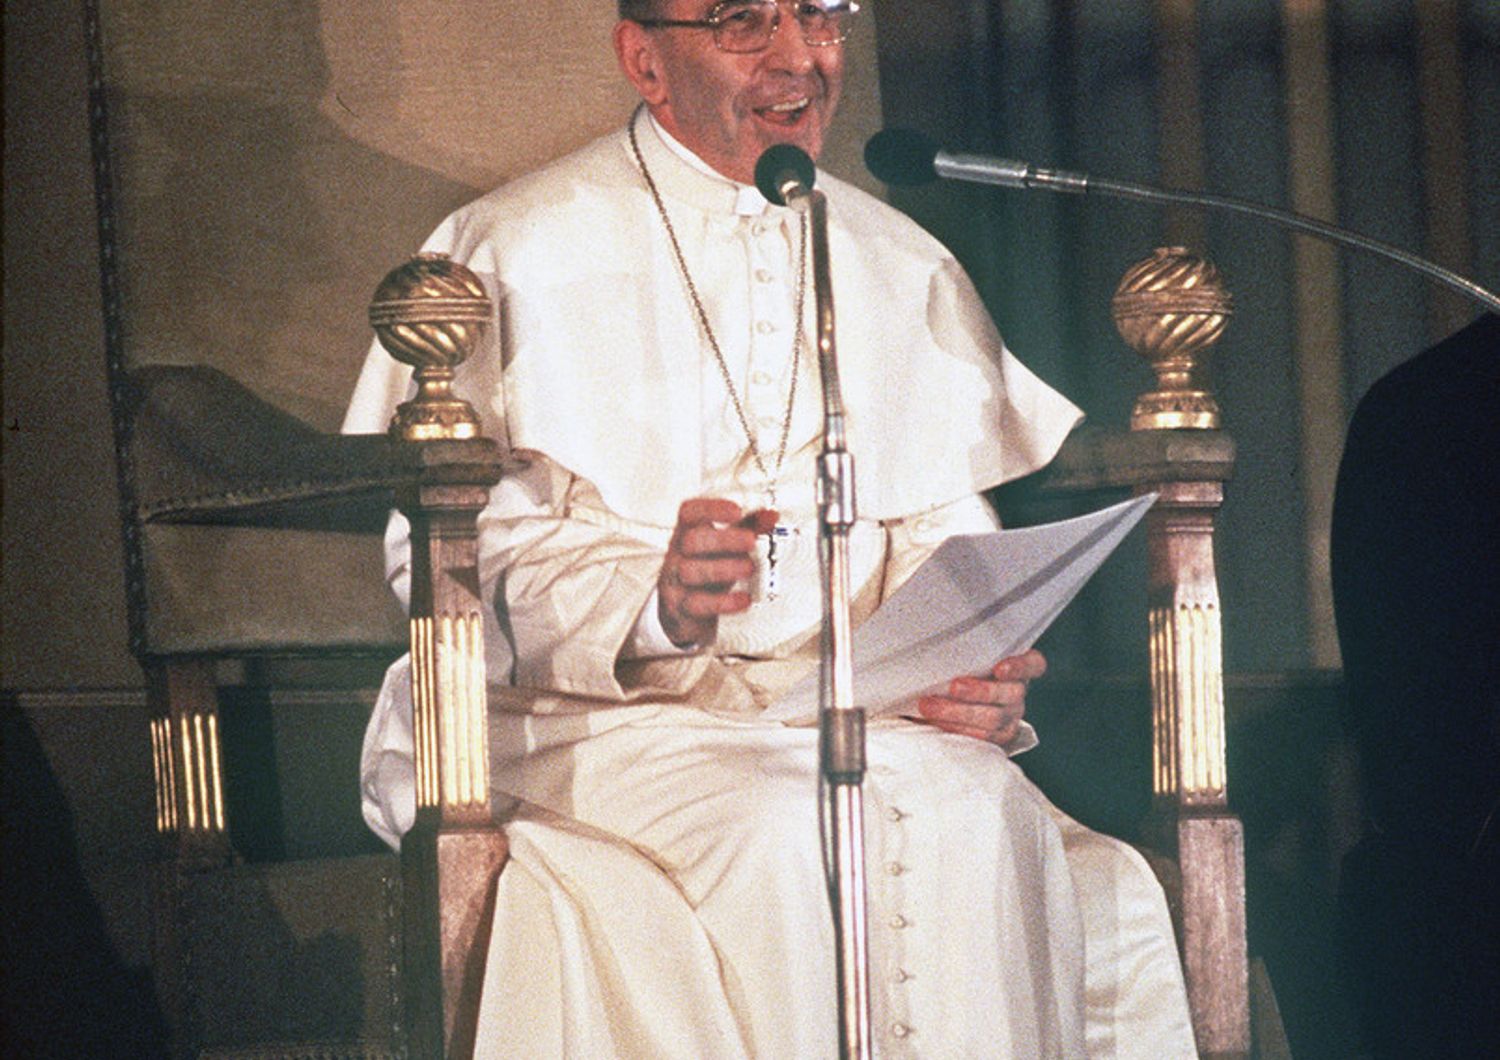 Papa Luciani